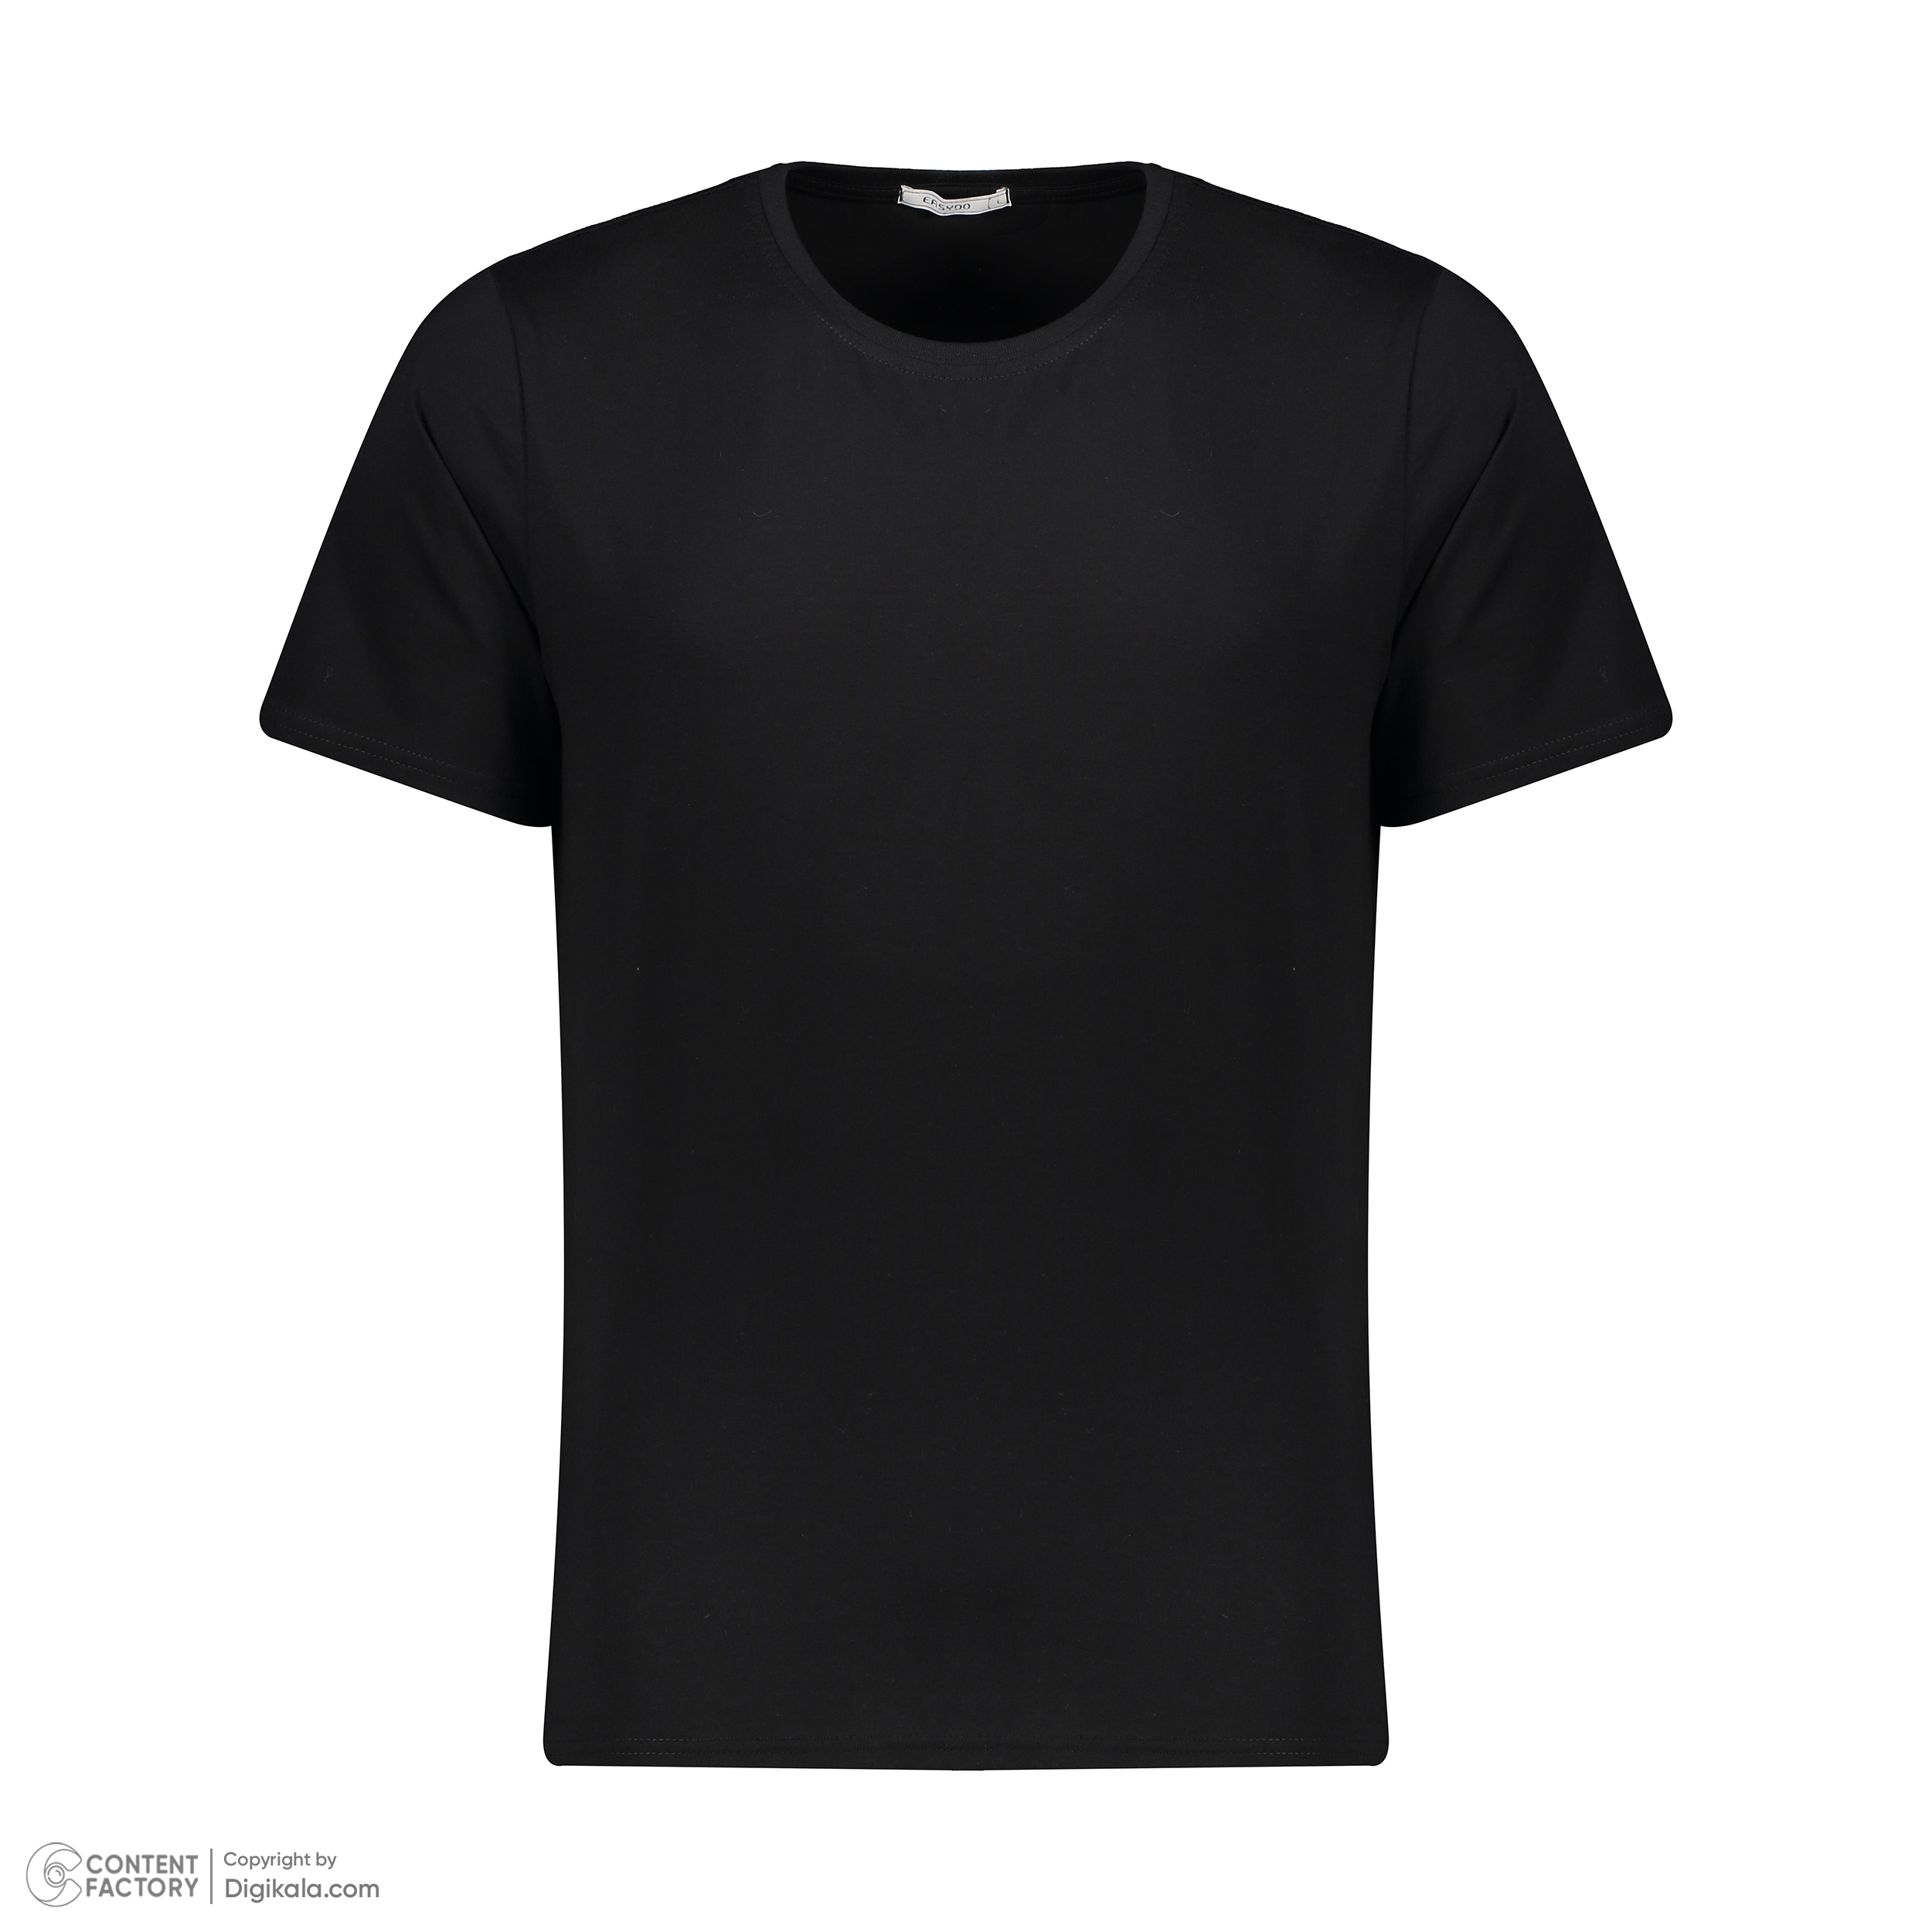 تی شرت آستین کوتاه مردانه ایزی دو مدل 2181299-99 -  - 2